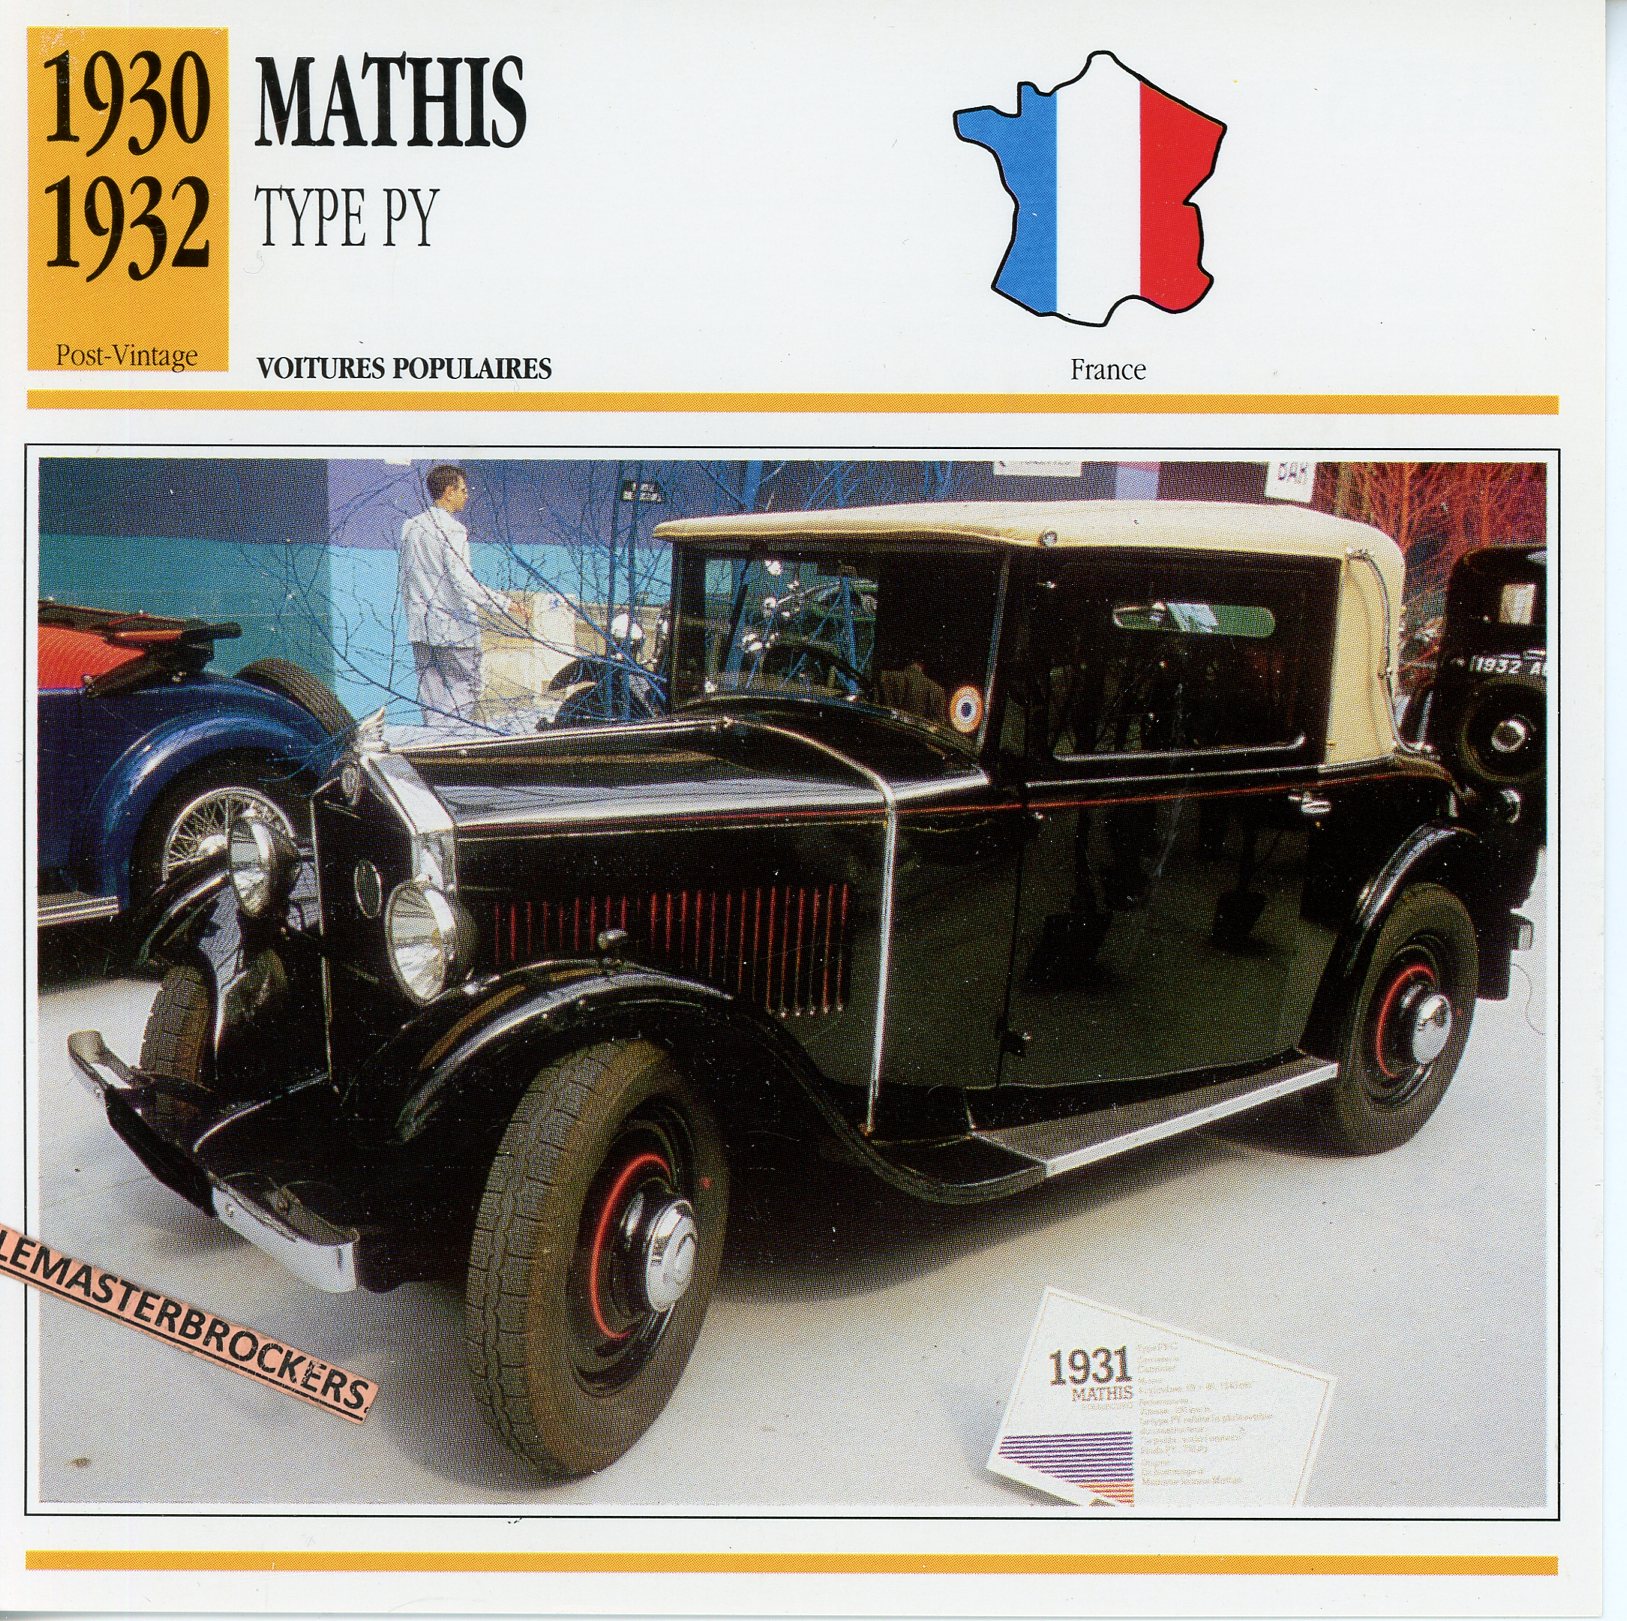 MATHIS PY 1930 1932 - FICHE AUTO ATLAS ÉDITION